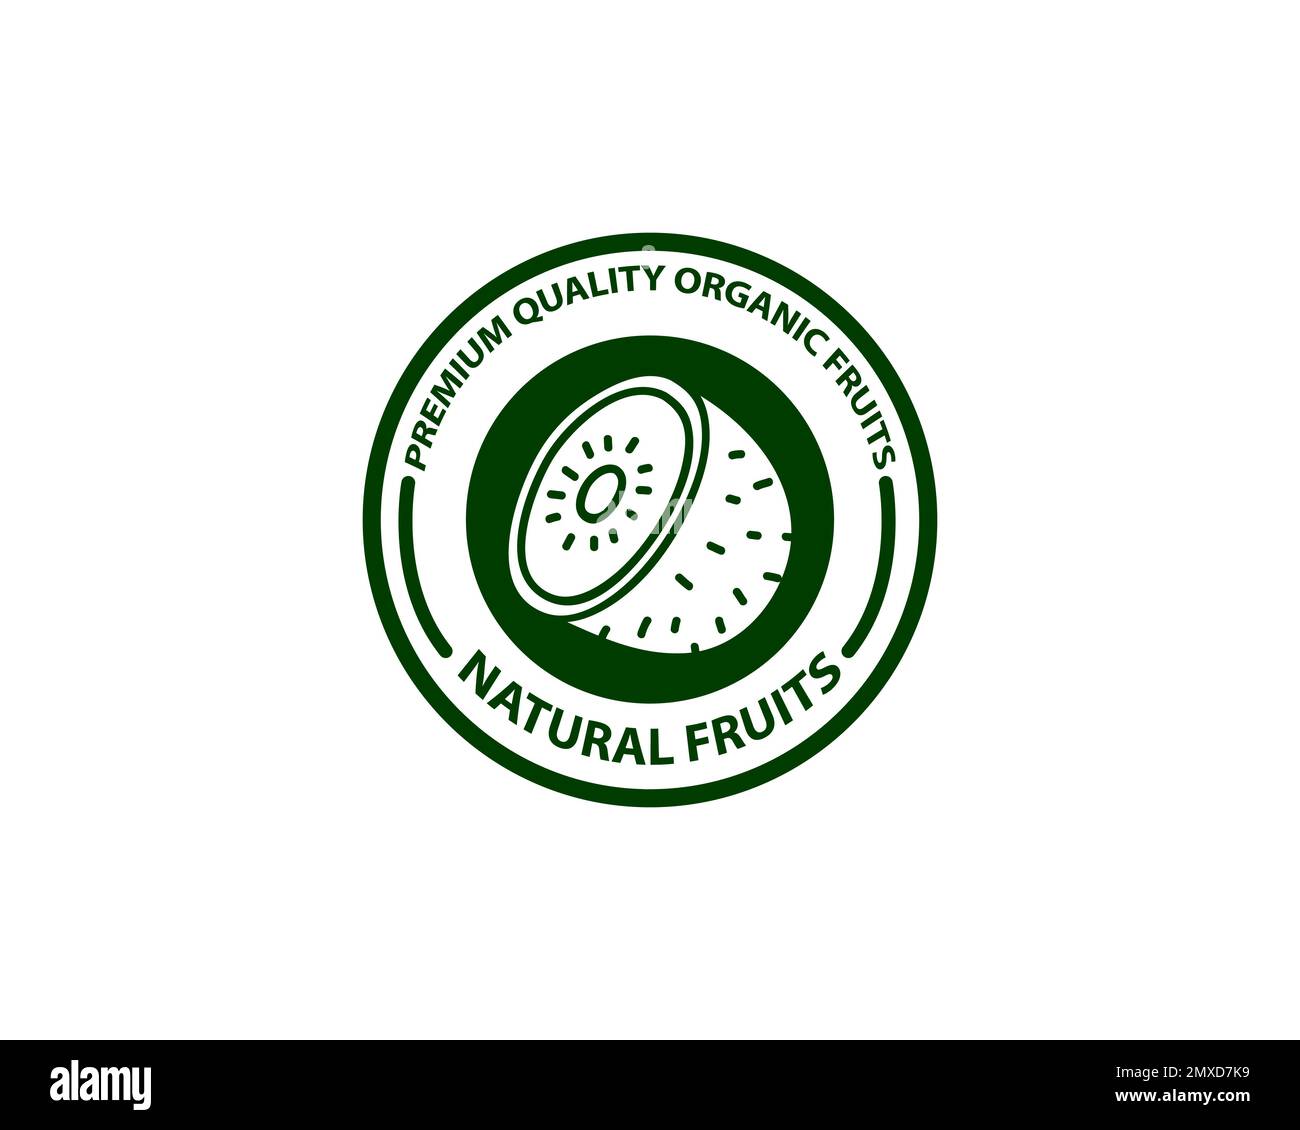 Kreatives Kreislogo Kiwi mit rundem halben Schnitt des Fruchtscheibensymbols und kreisförmigen Samen-Symbolen für die Kennzeichnung enthält natürliches biologisches Kiwi-Fruchtextr Stock Vektor